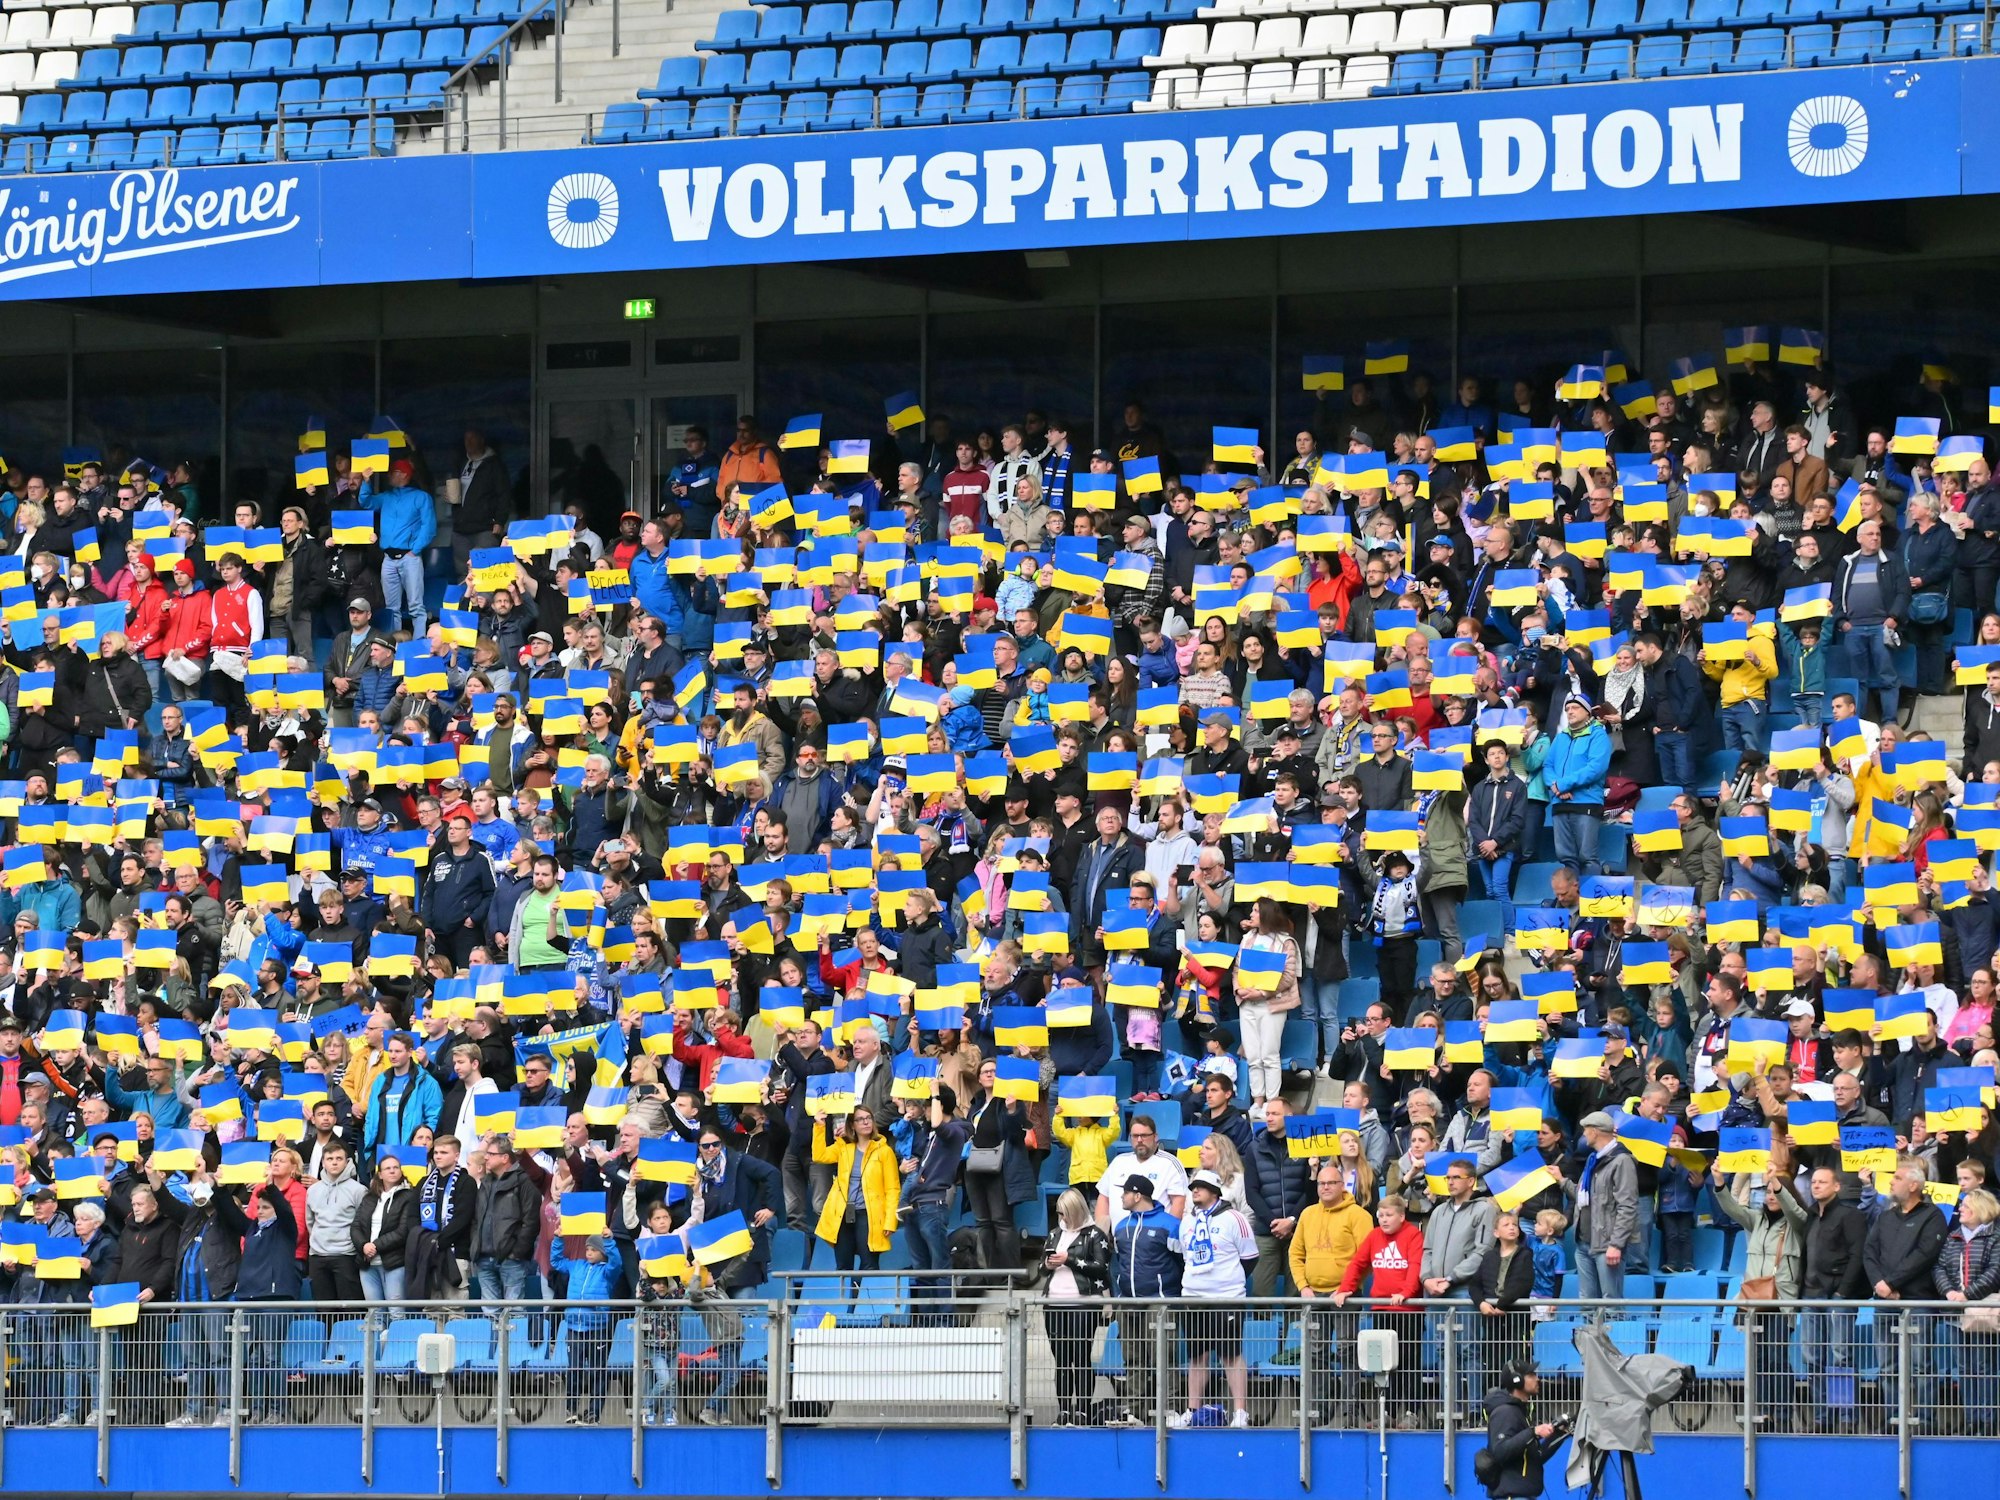 Die Zuschauer des Benefizspiels am 28. Mai 2022 stehen auf ihren Plätzen und halten Plakate mit der ukrainischen Fahne in die Höhe, während die ukrainische Nationalhymne gespielt wird.